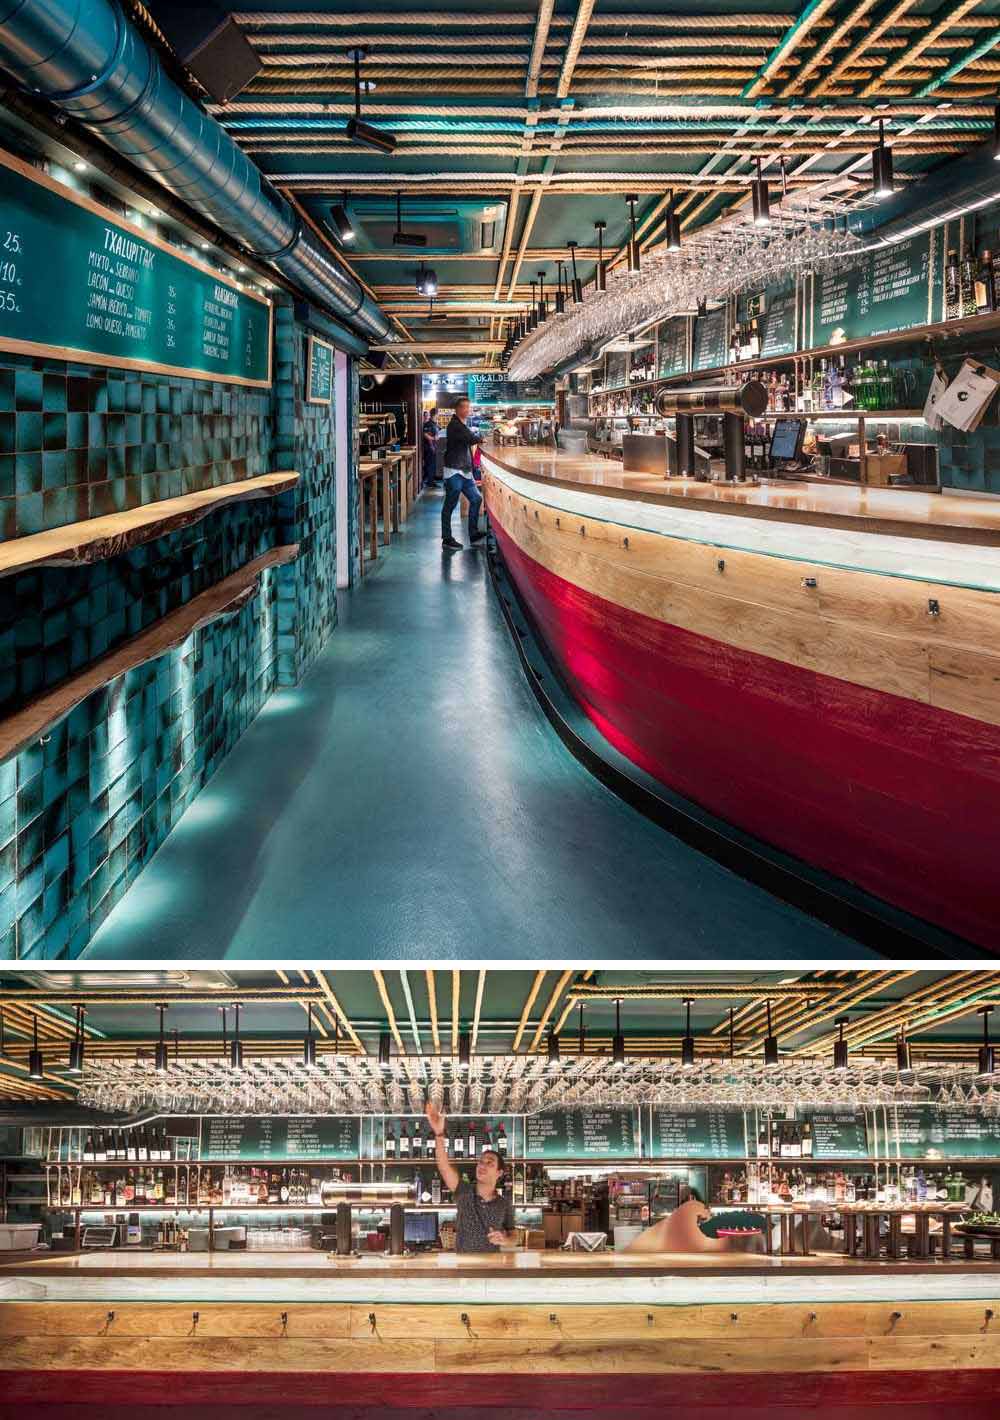 Название ресторана Txalupa вдохновлено названием рыбацких лодок, а изогнутая деревянная стойка отсылает к txalupa как по дизайну, тонам, так и по материалу.